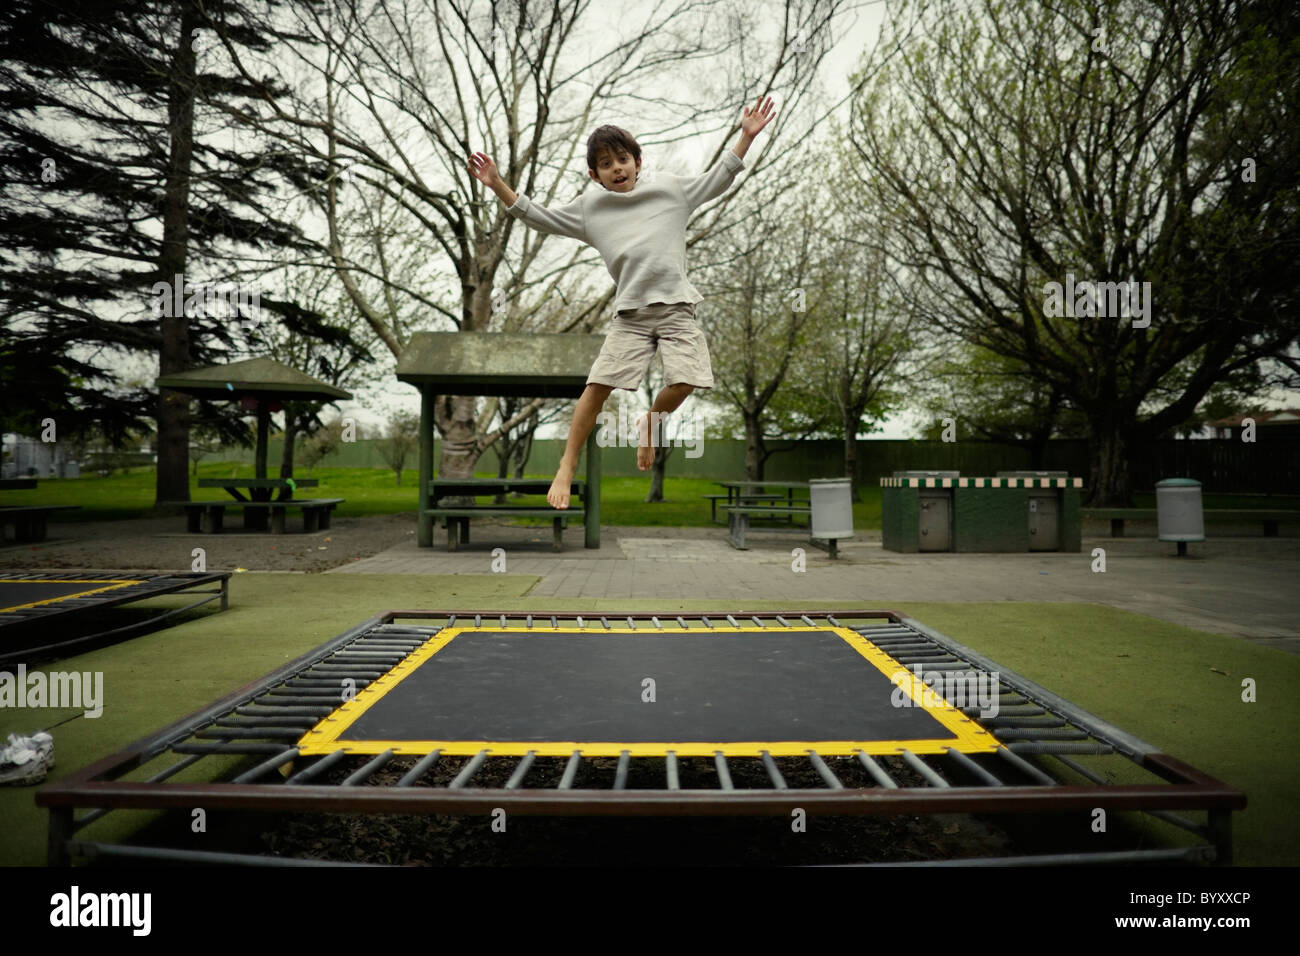 Junge springt auf Trampolin im öffentlichen Spielplatz, Neuseeland. Stockfoto